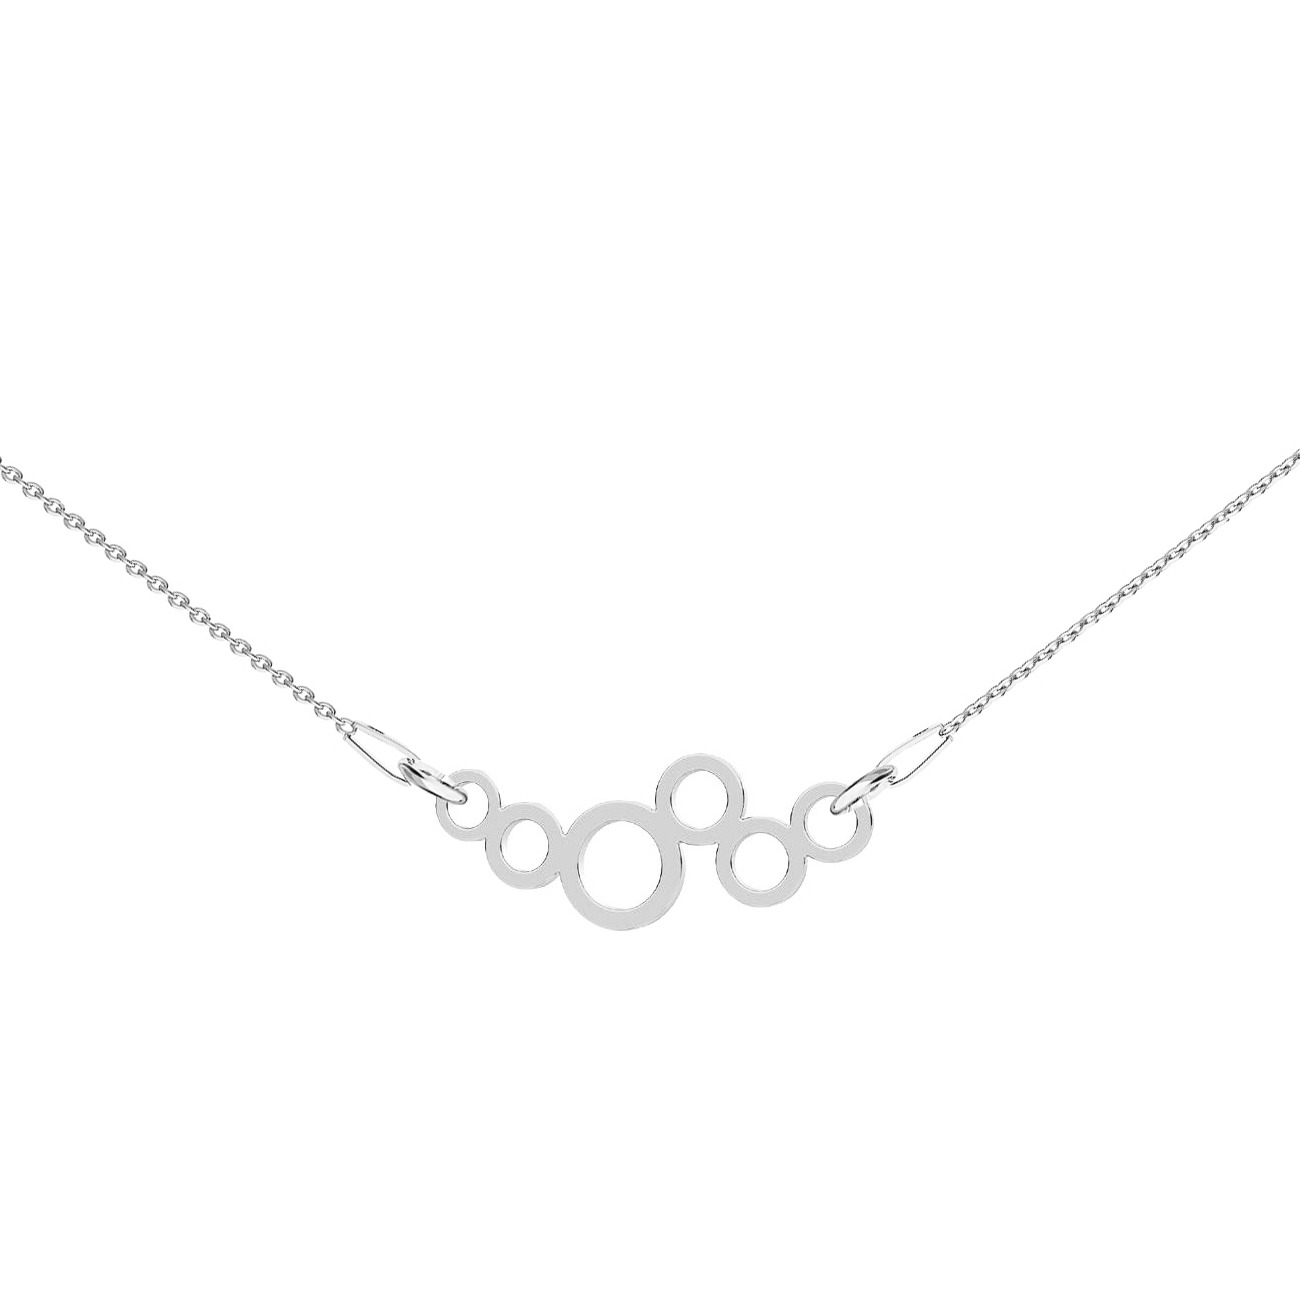 NUBIS® Stříbrný náhrdelník s kolečky - NB-0445